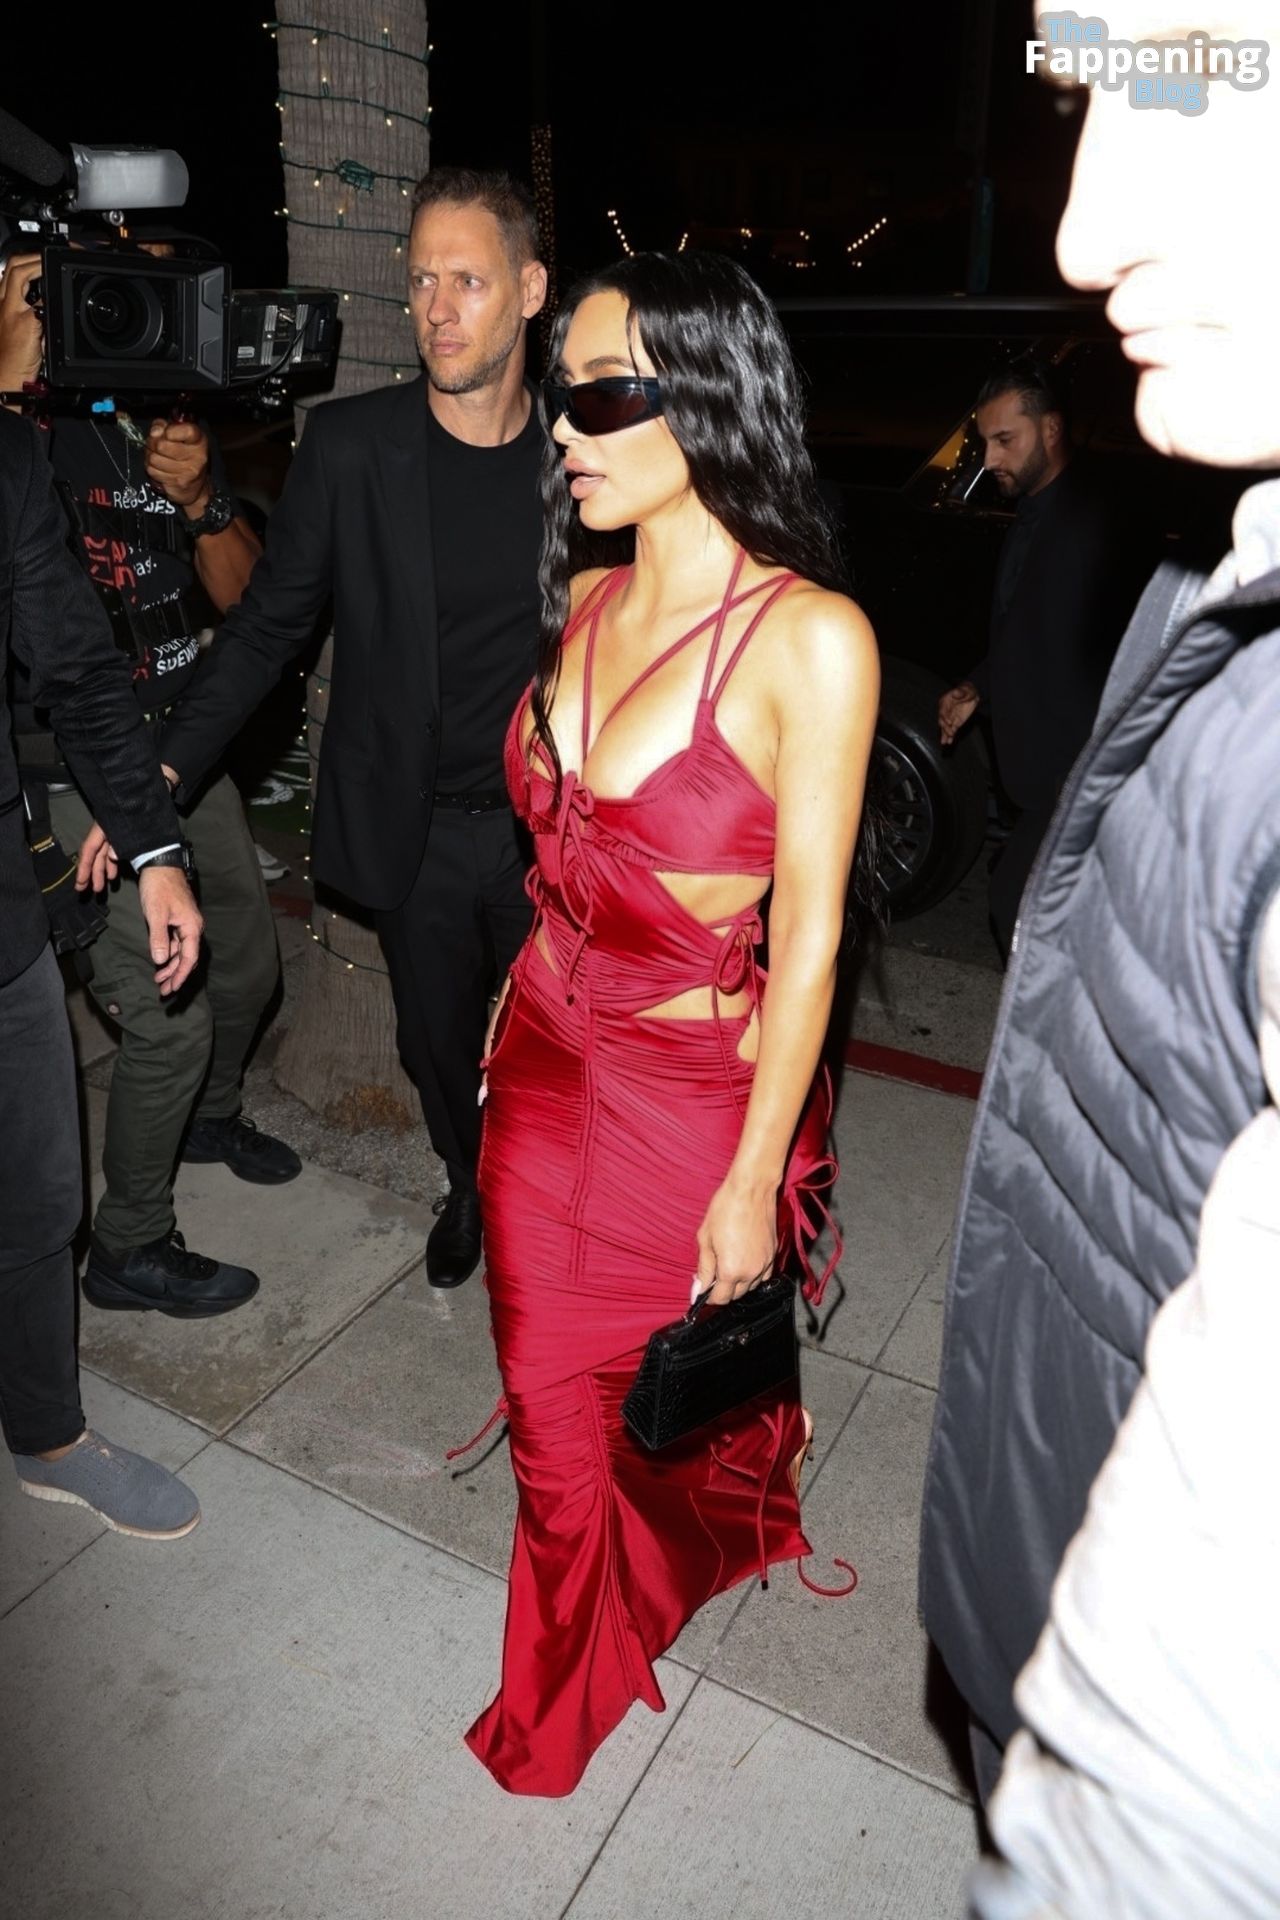 Kim-Kardashian-Sexy-38-The-Fappening-Blog-1.jpg